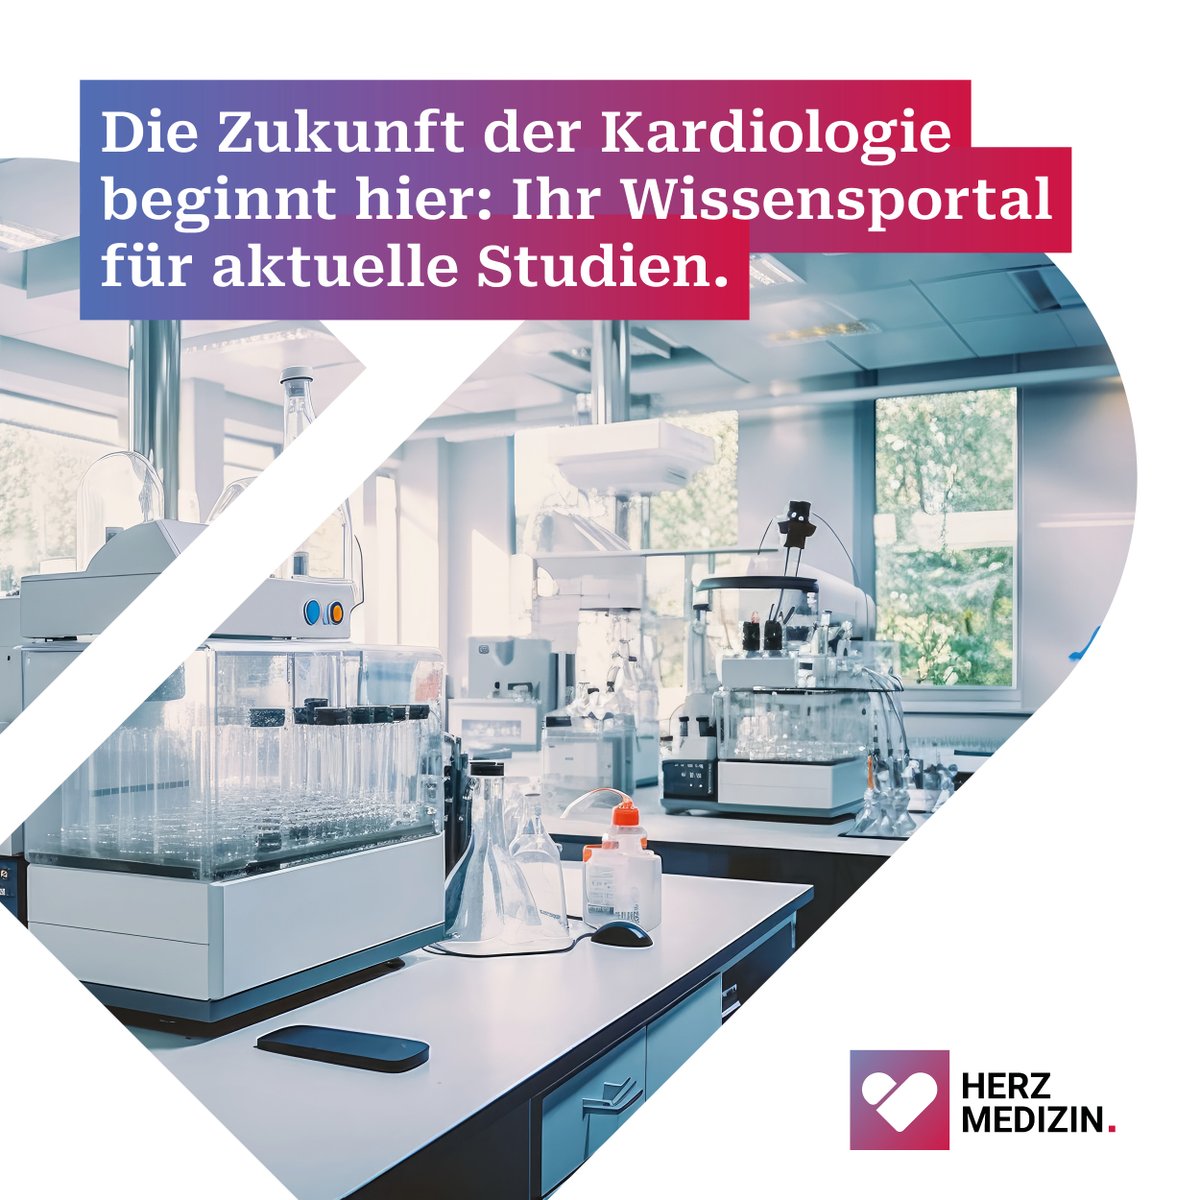 Erkunden Sie die Welt der Kardiologie und bleiben Sie stets auf dem neuesten Stand. Besuchen Sie uns jetzt auf Herzmedizin.de! #Herzmedizinde #DGK #BNK #Kardiologie #Herzgesundheit #KardiovaskuläreMedizin #Fachwissen #DGK2024JT #DGKJahrestagung